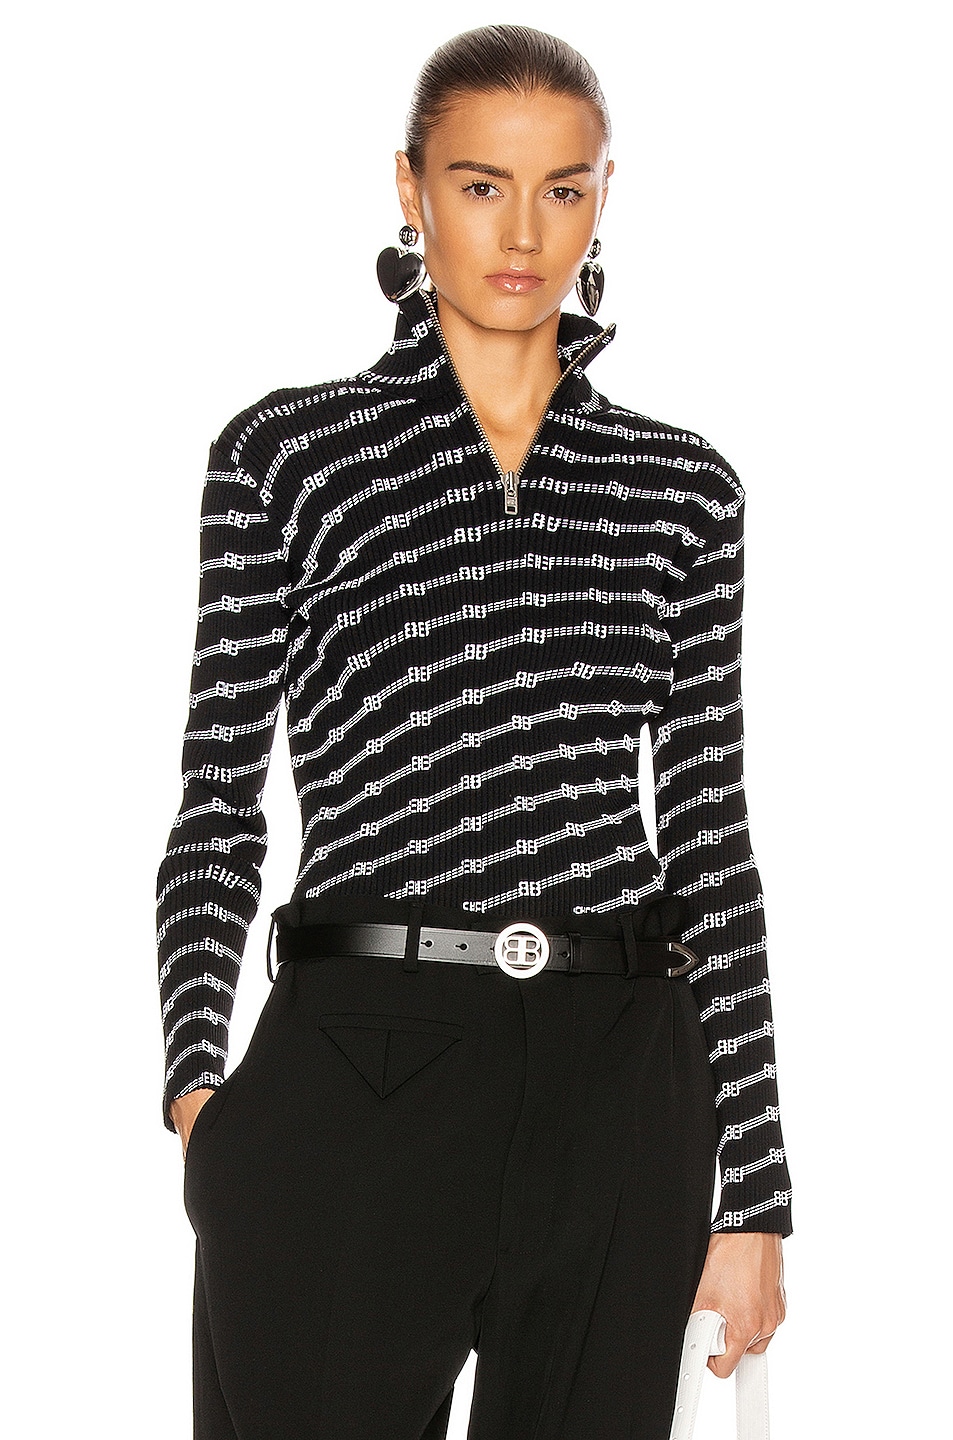 Balenciaga Long Sleeve Zipped Rollneck Top in Black & White | FWRD